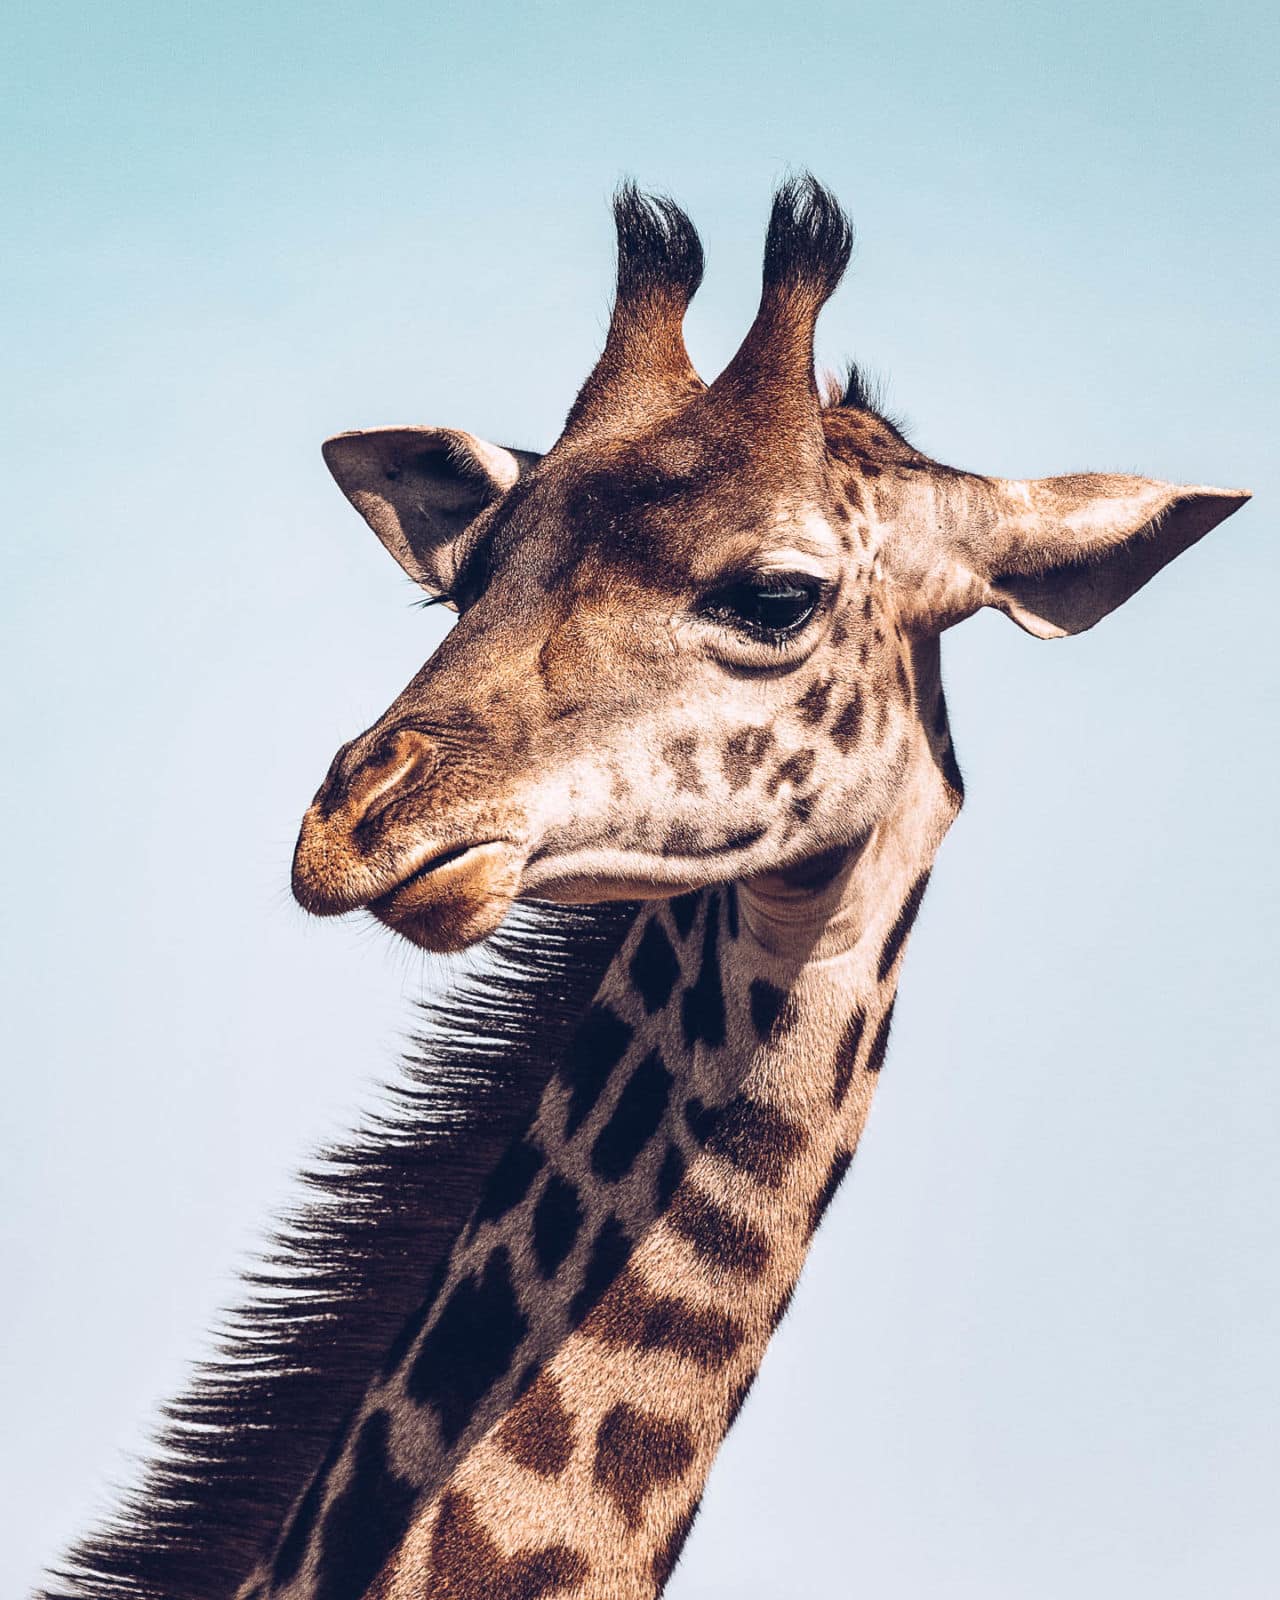 Do giraffes have 3 horns?